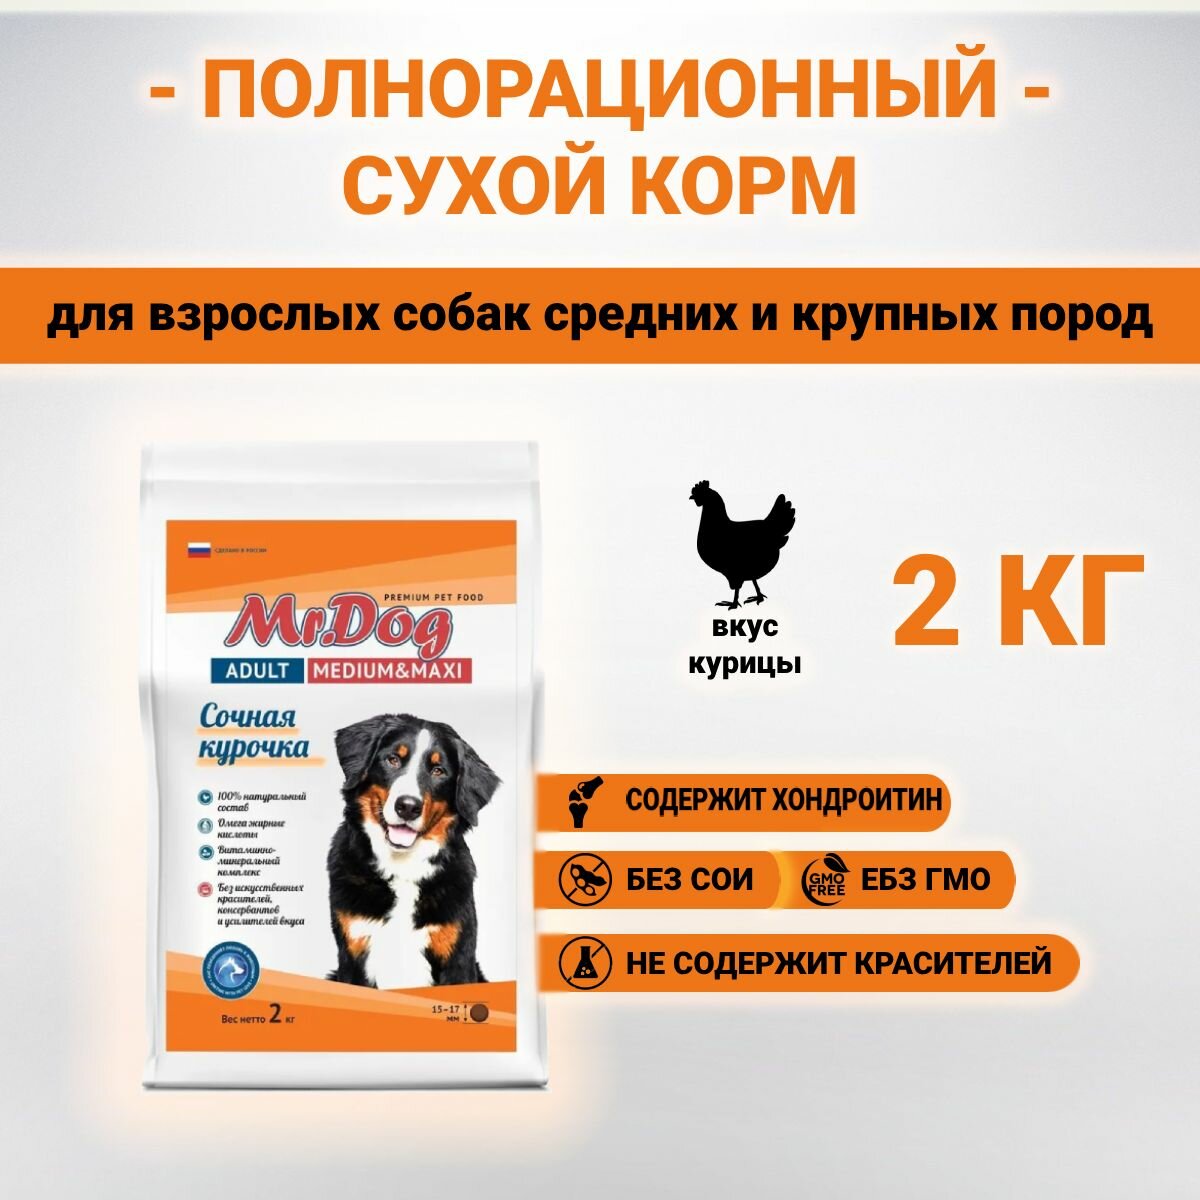 Сухой корм Mr.Dog с курицей для взрослых собак средних и крупных пород 2 кг